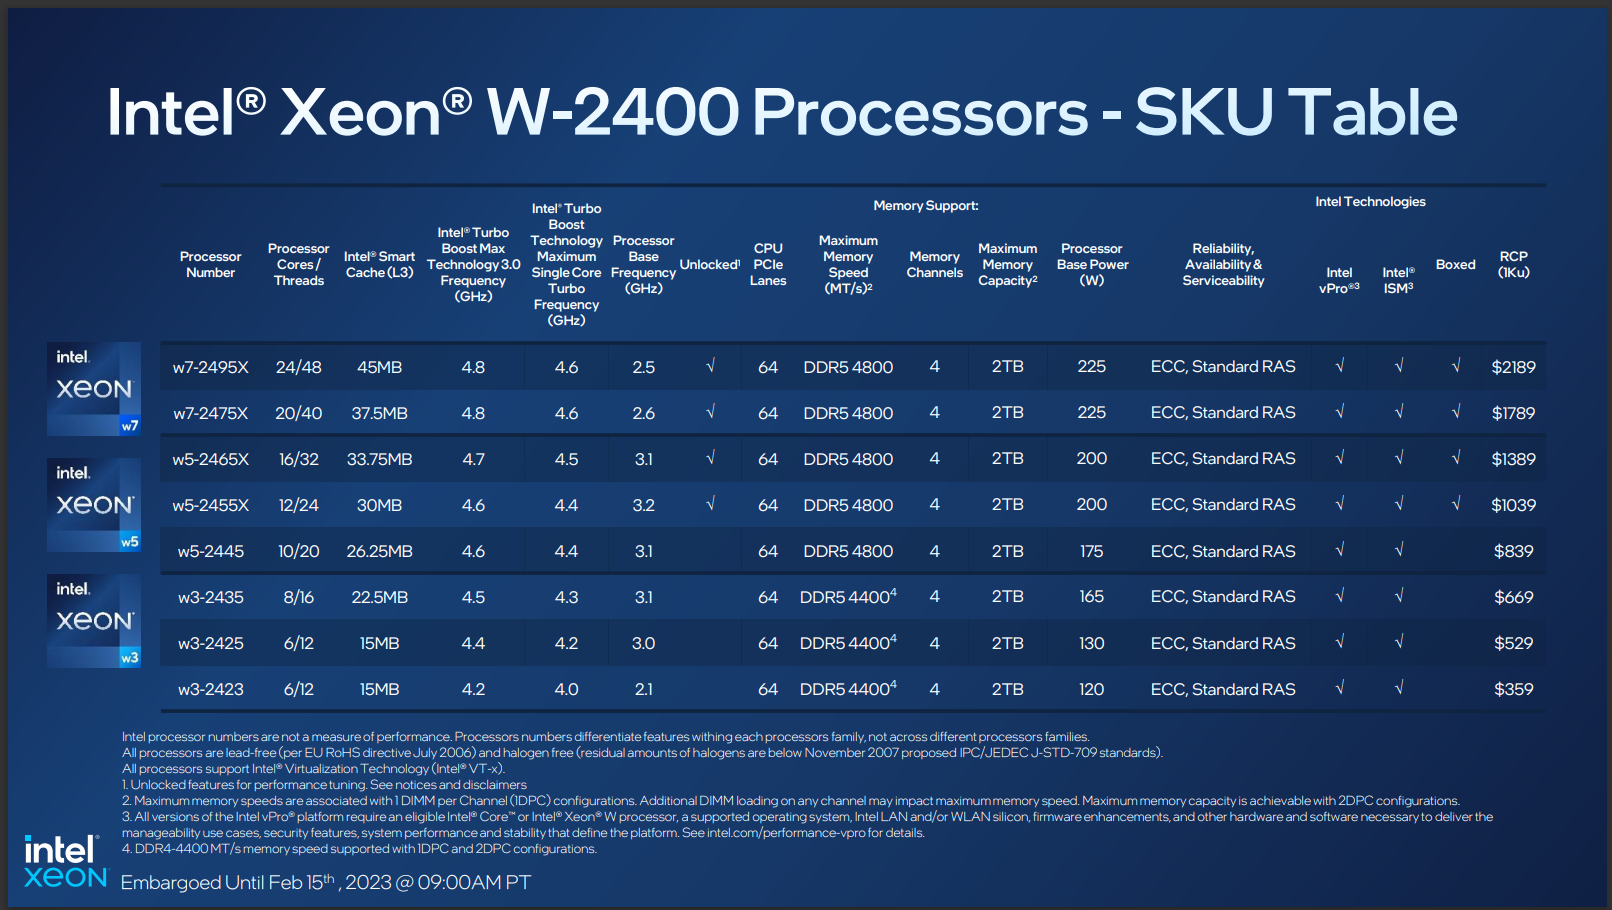 Intel Xeon W-2400 Processors